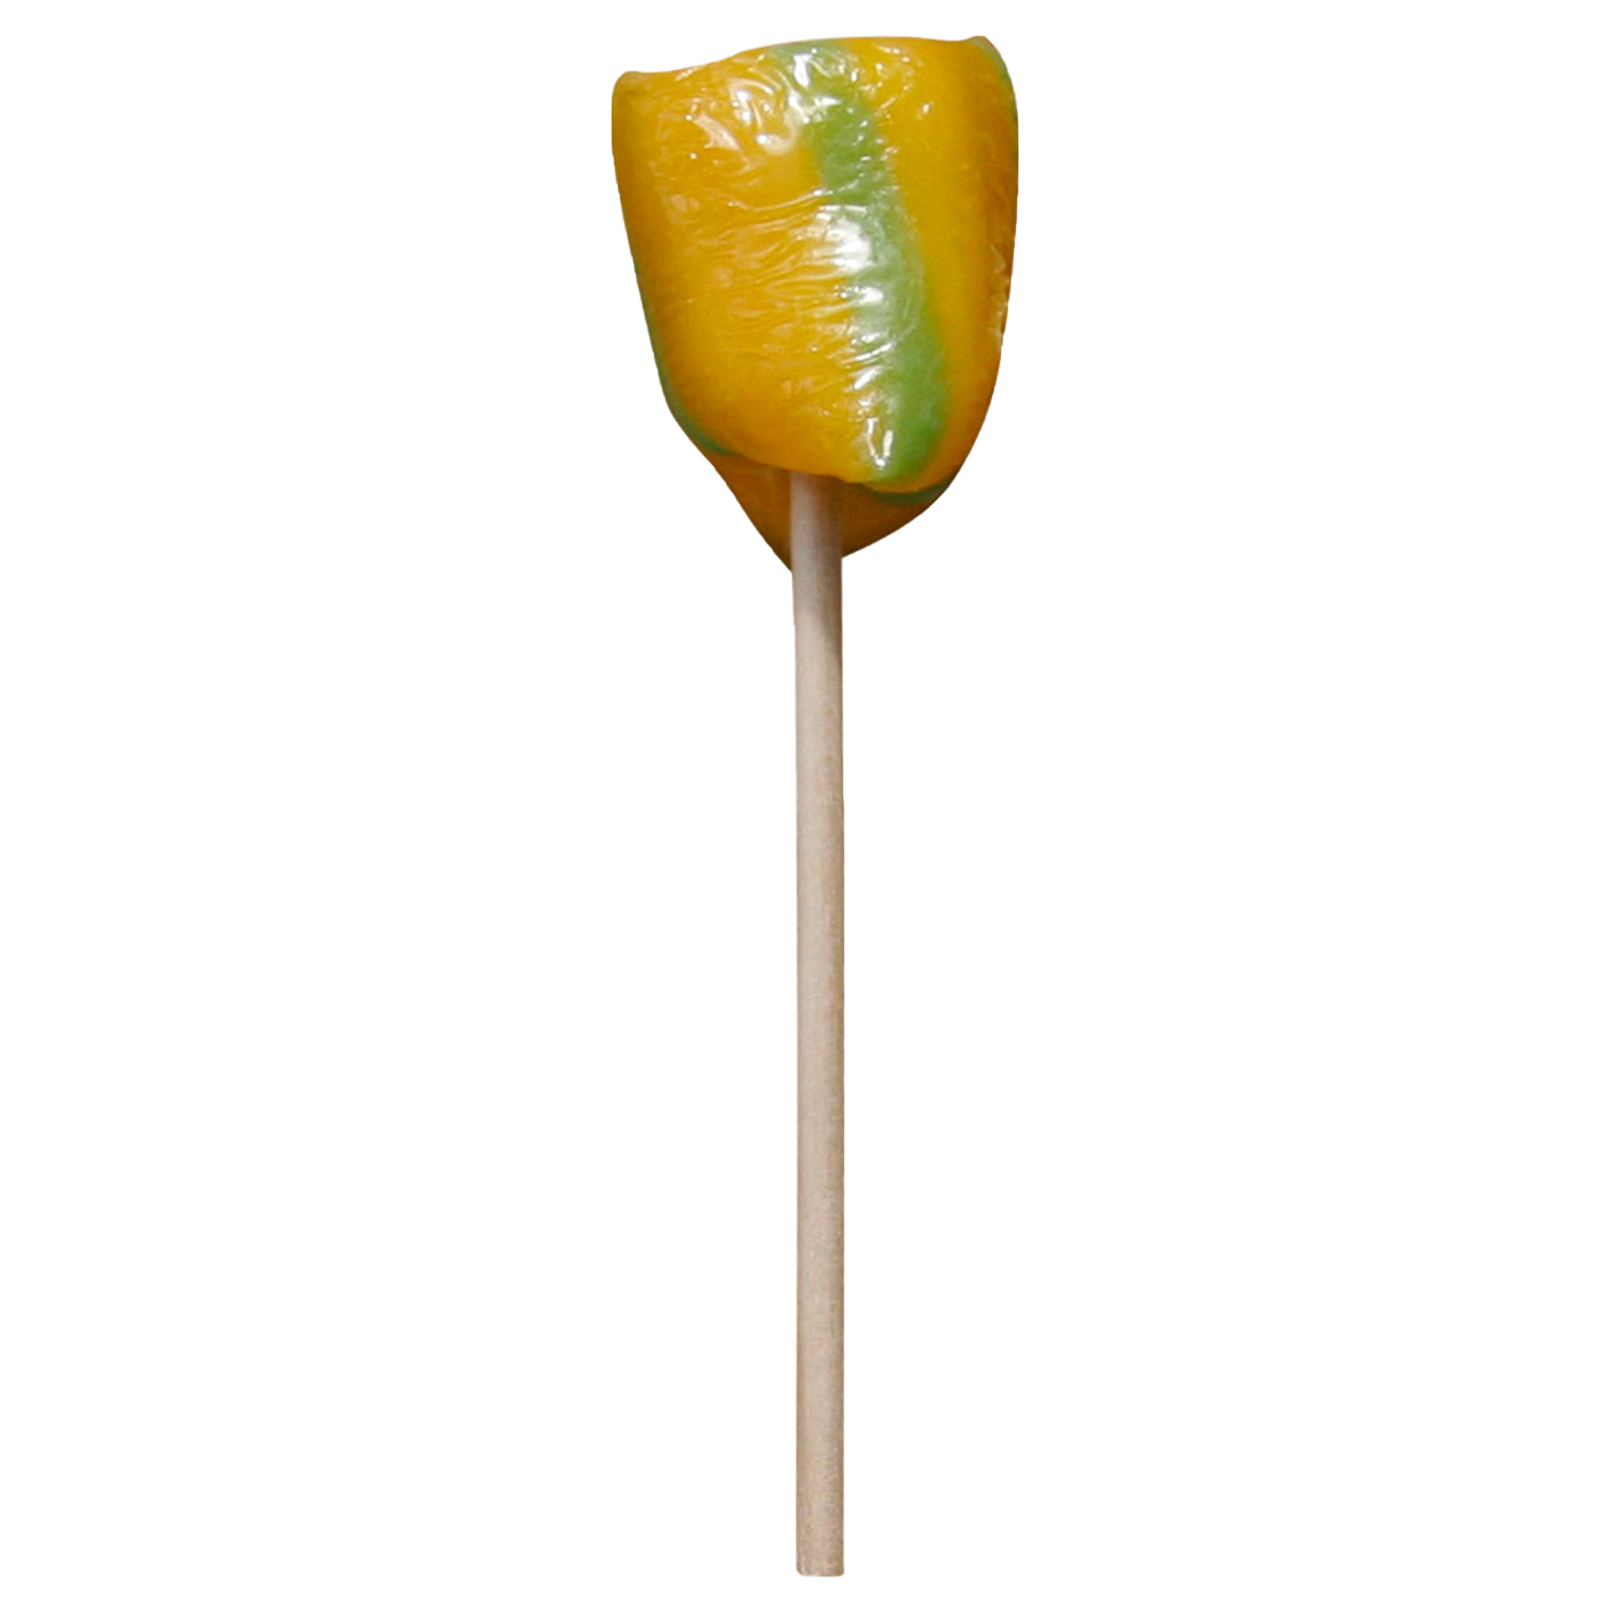 Sour Lollipop small